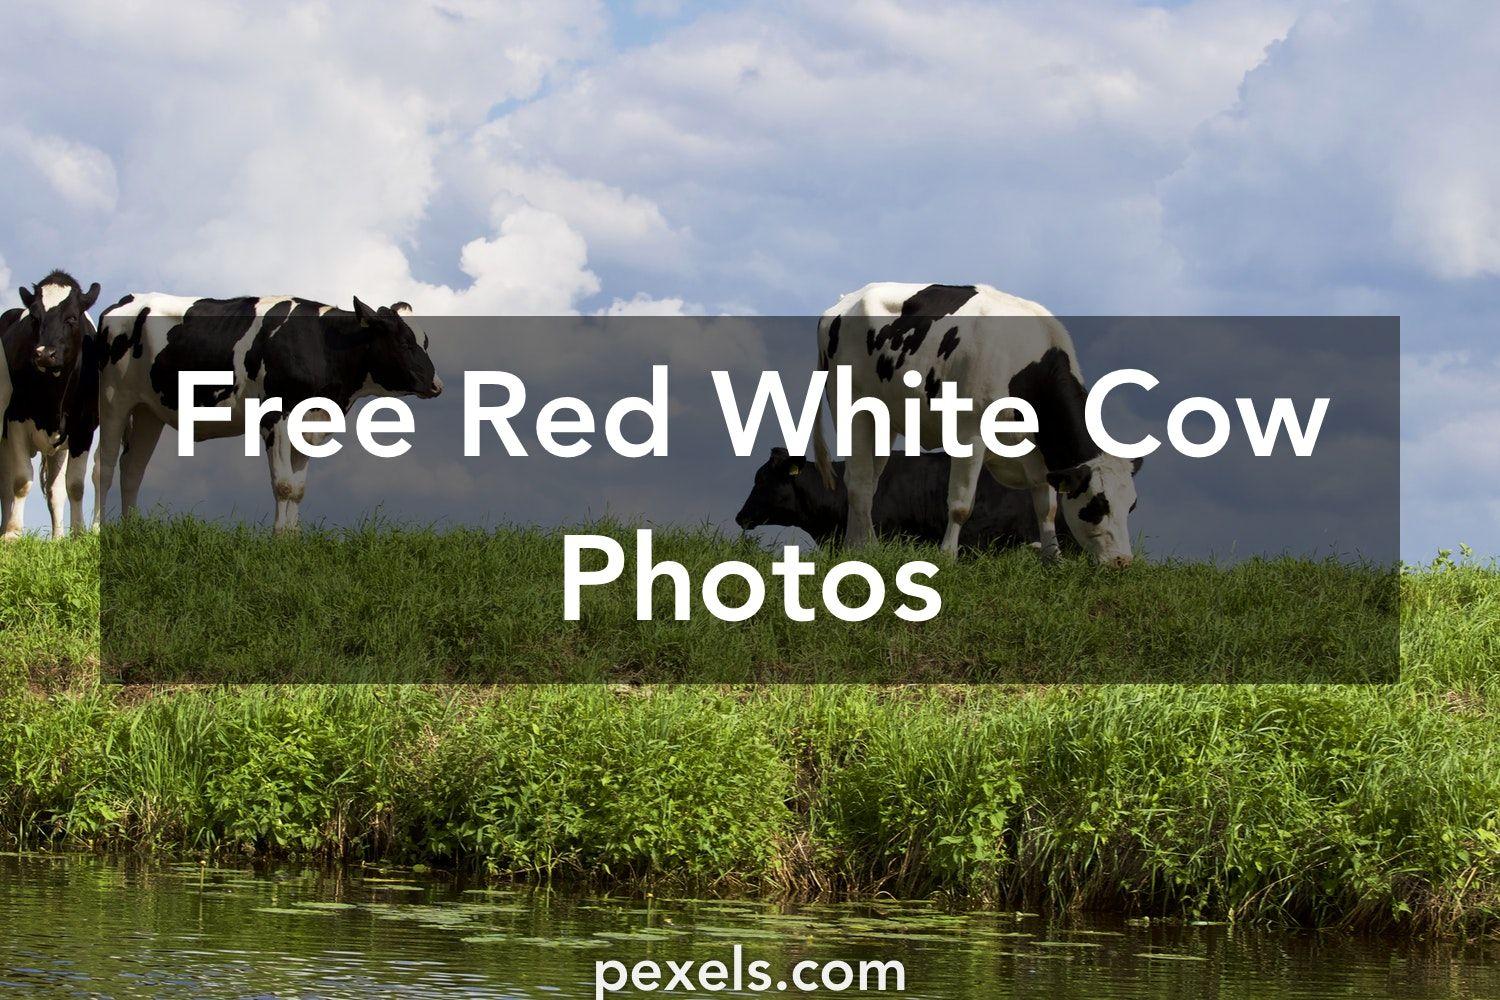 Red White Cow Logo - 1000+ Beautiful Red White Cow Photos · Pexels · Free Stock Photos